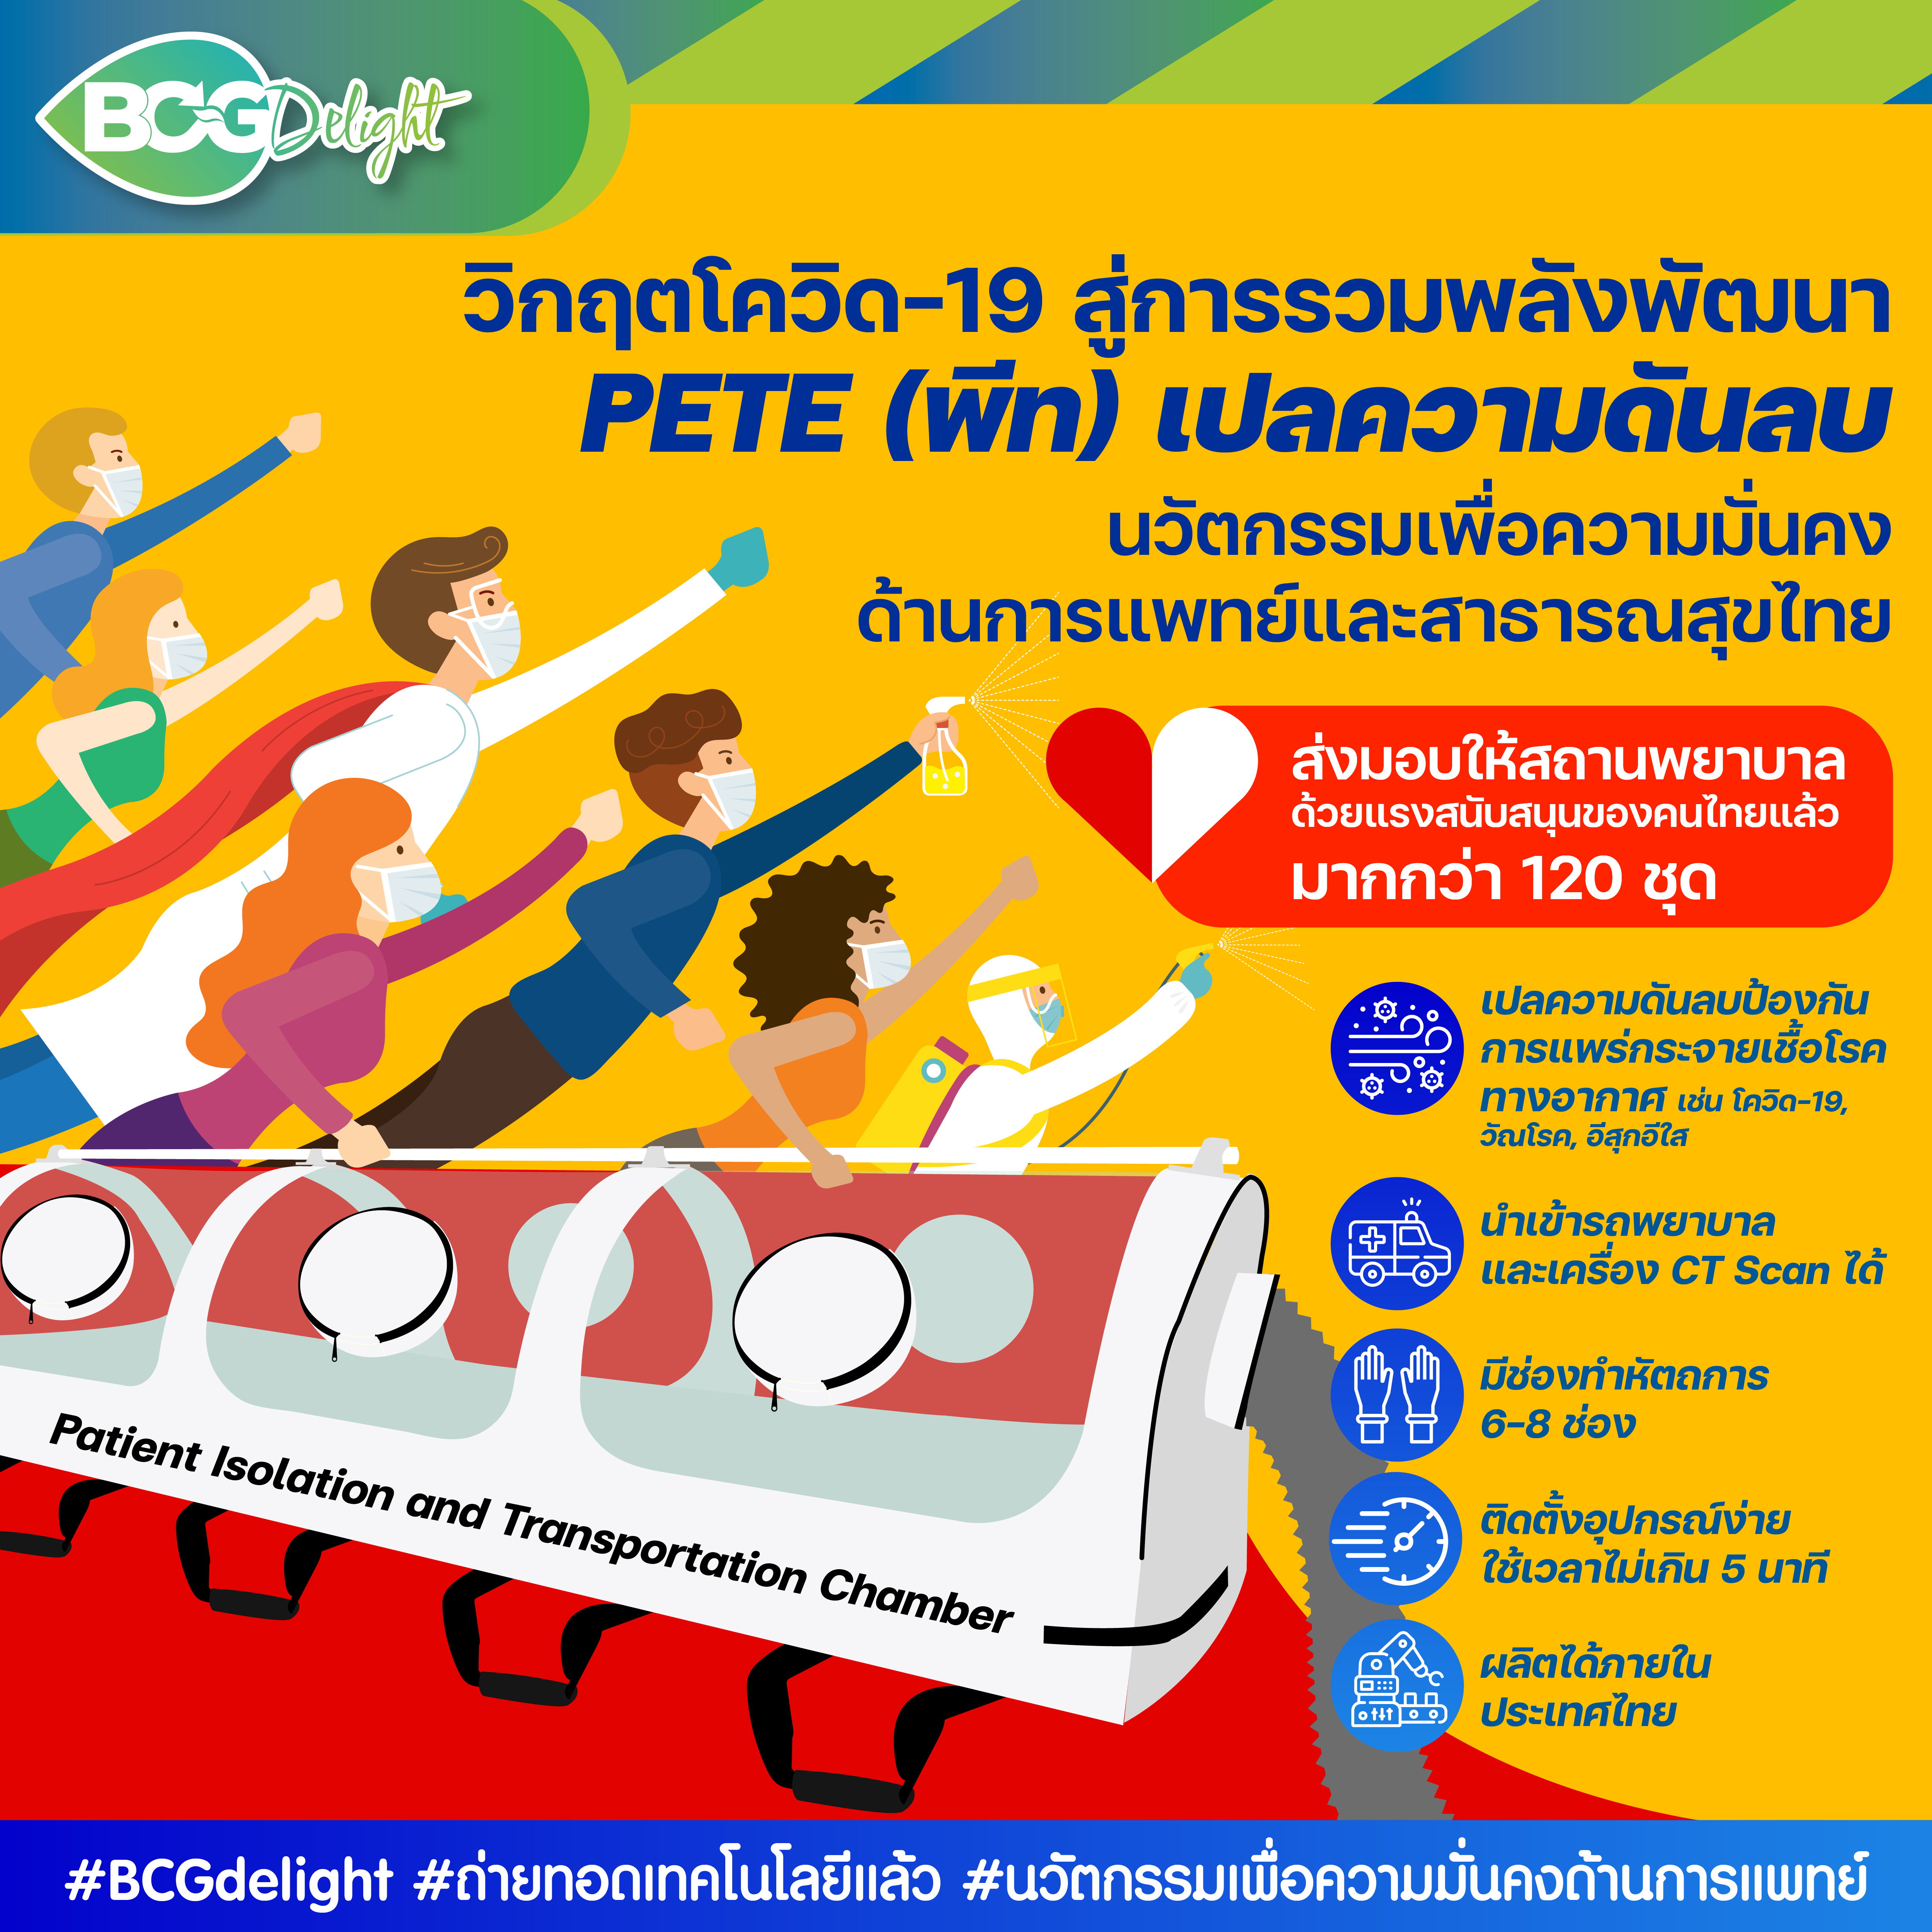 บทเรียนวิกฤตโควิด-19 สู่การพัฒนา “PETE (พีท) เปลความดันลบ” นวัตกรรมเพื่อความมั่นคงด้านการแพทย์และสาธารณสุขไทย